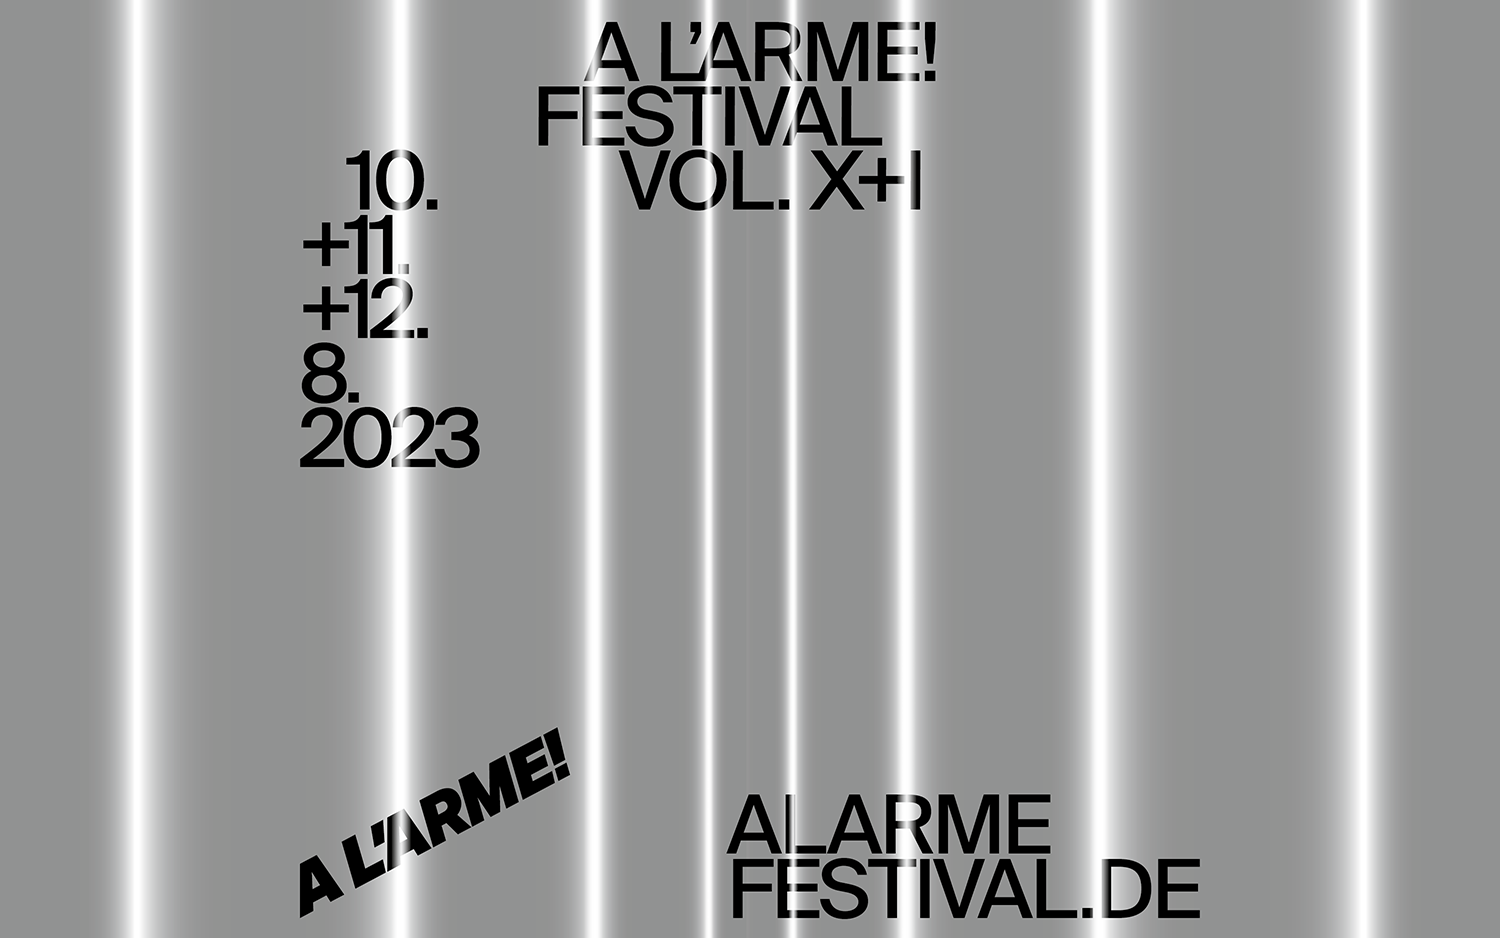 Das Visual des Festivals zeigt schwarze Schrift auf grau-weiß gestreiftem Hintergrund